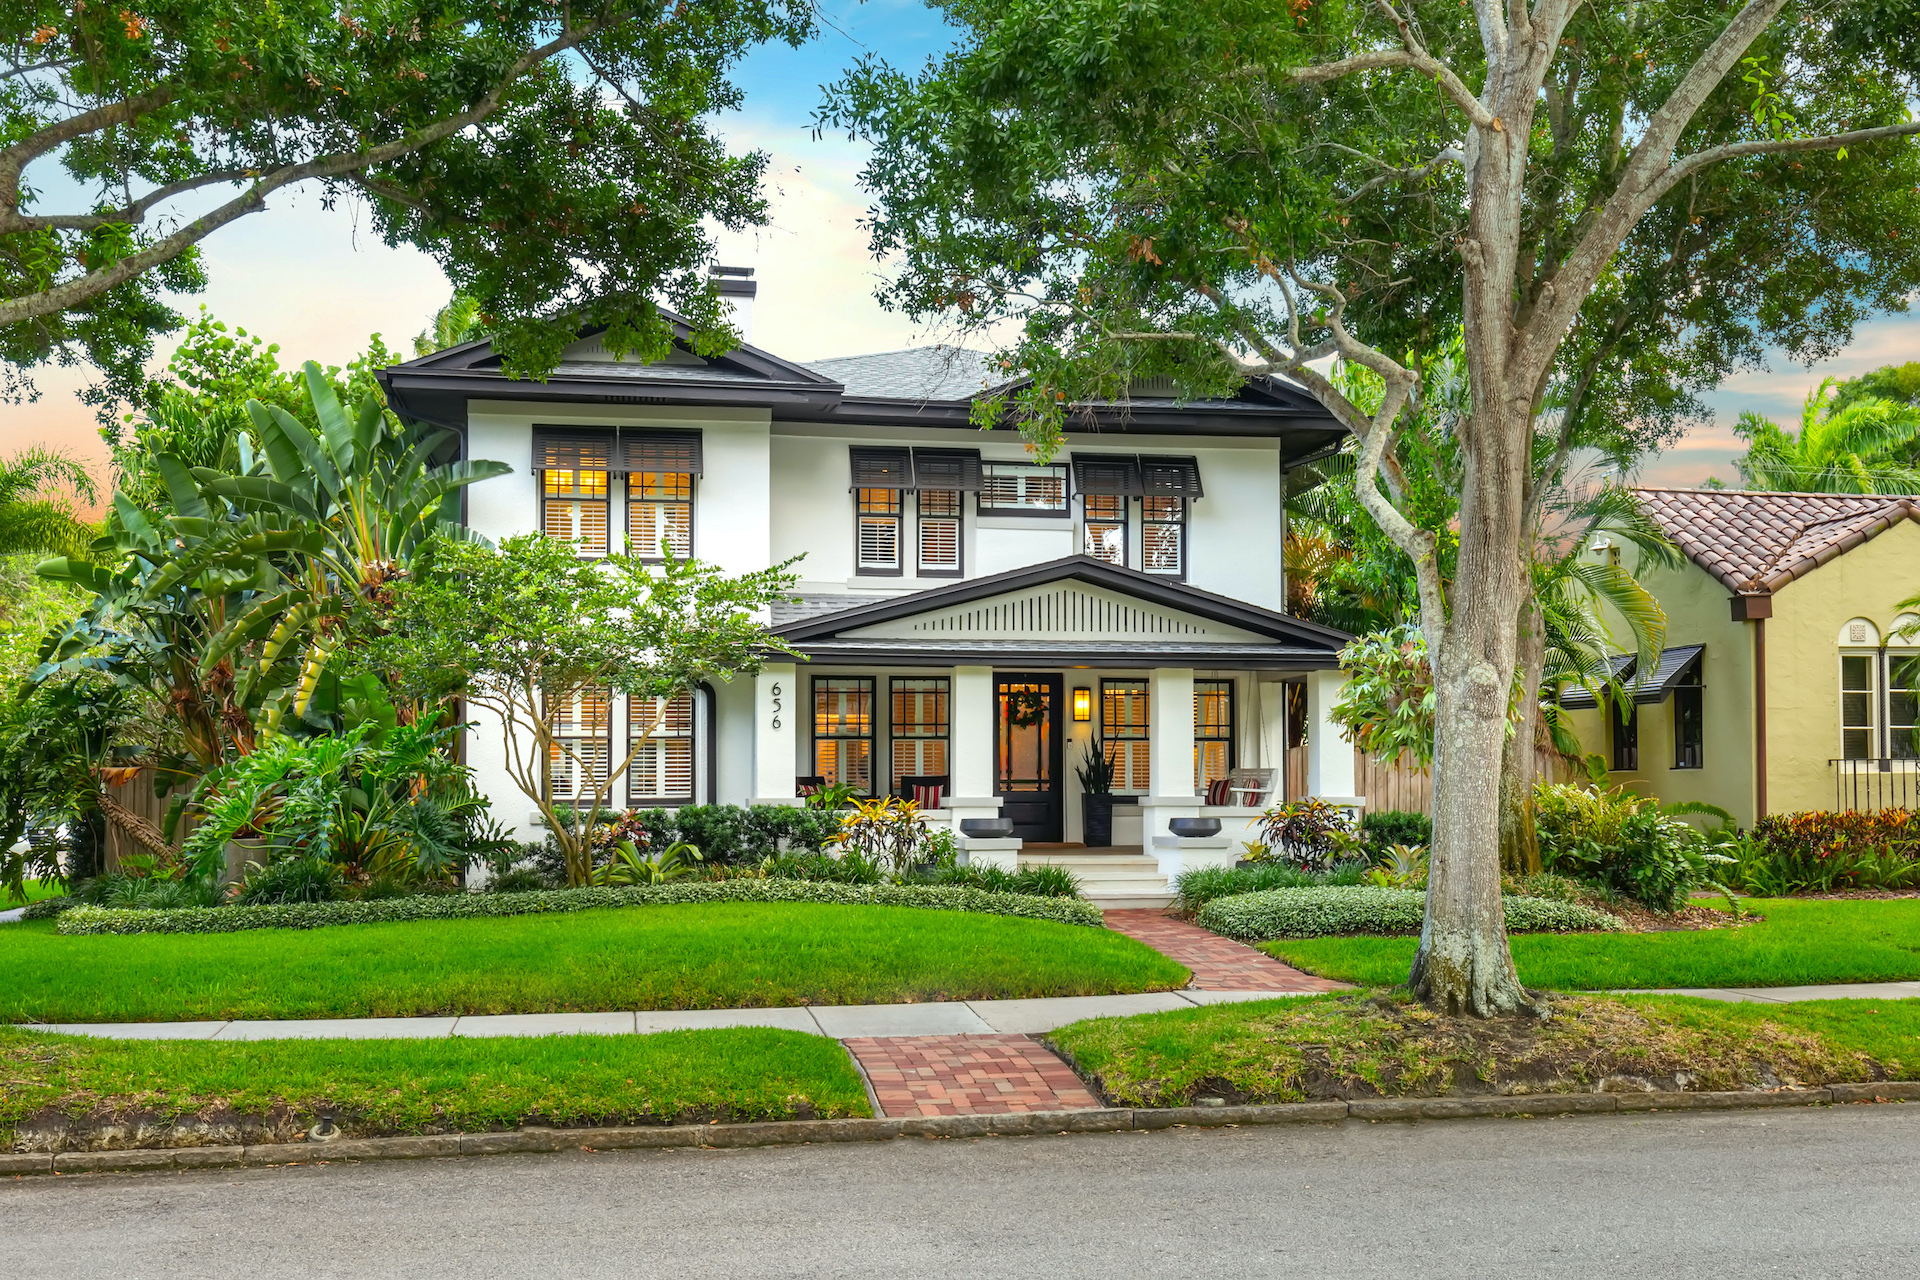 Bonnie Strickland | Smith & Associates Real Estate | REALTOR | Home